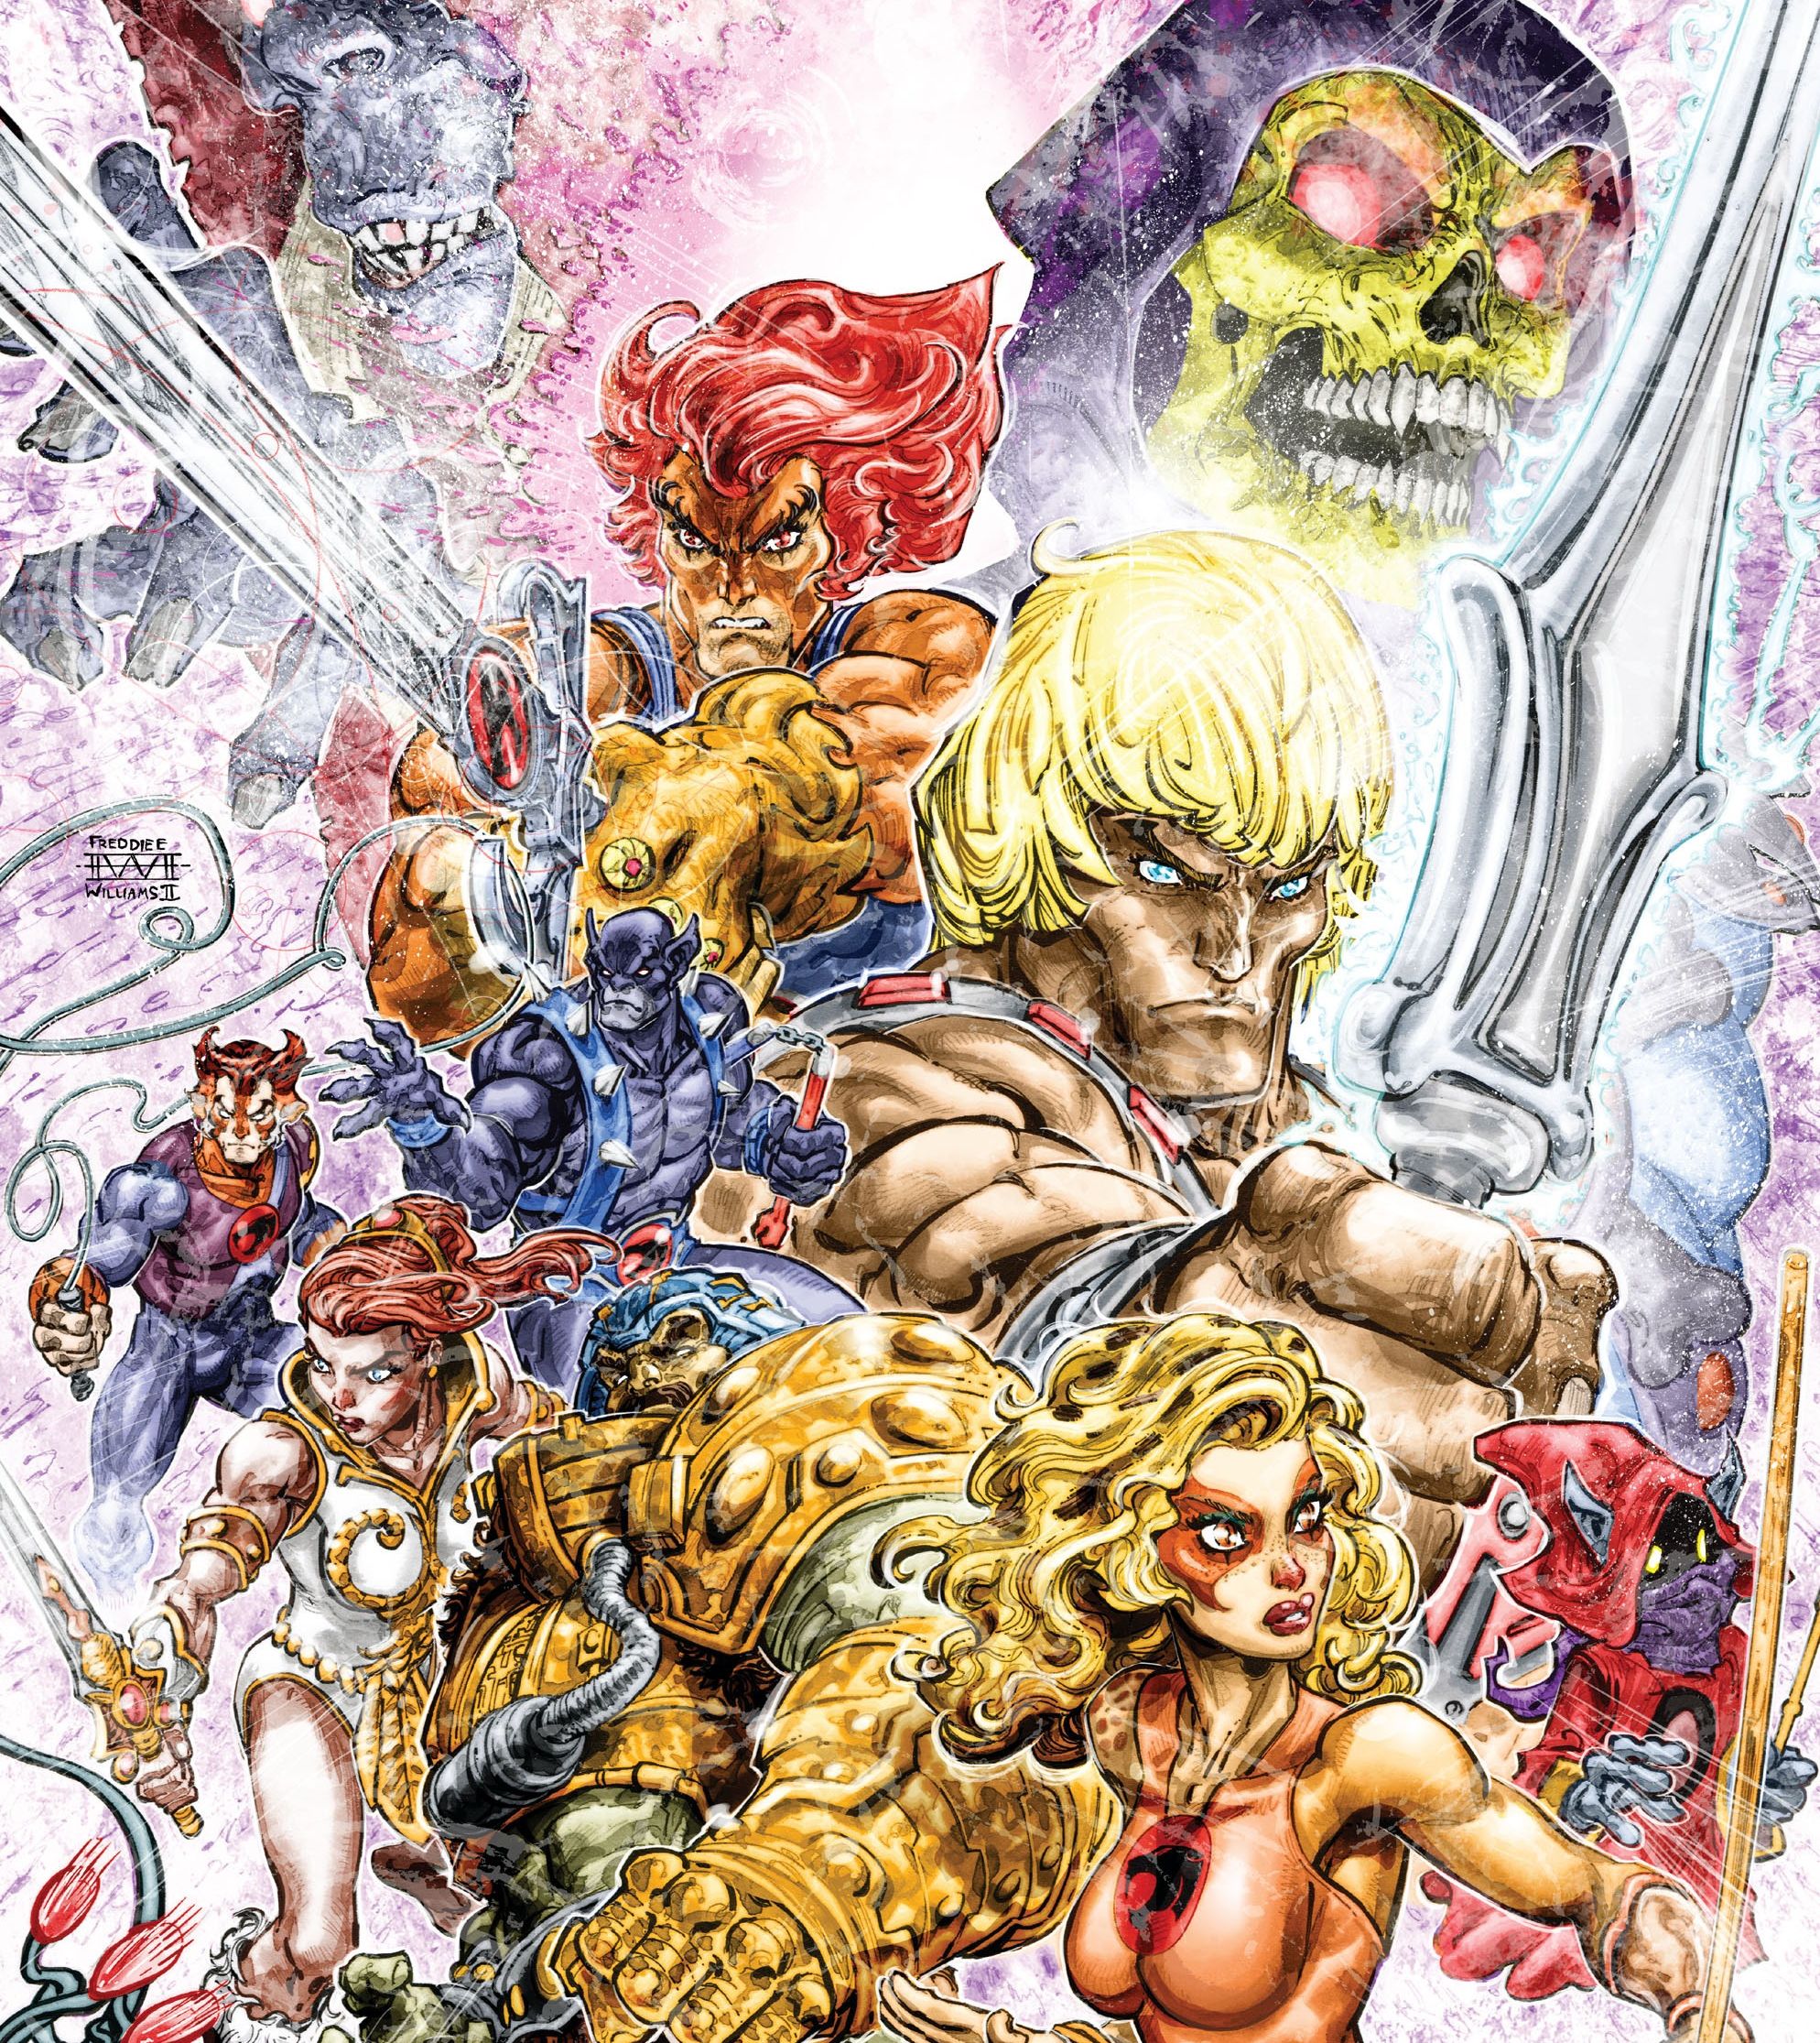 He-Man ThunderCats Issue #2